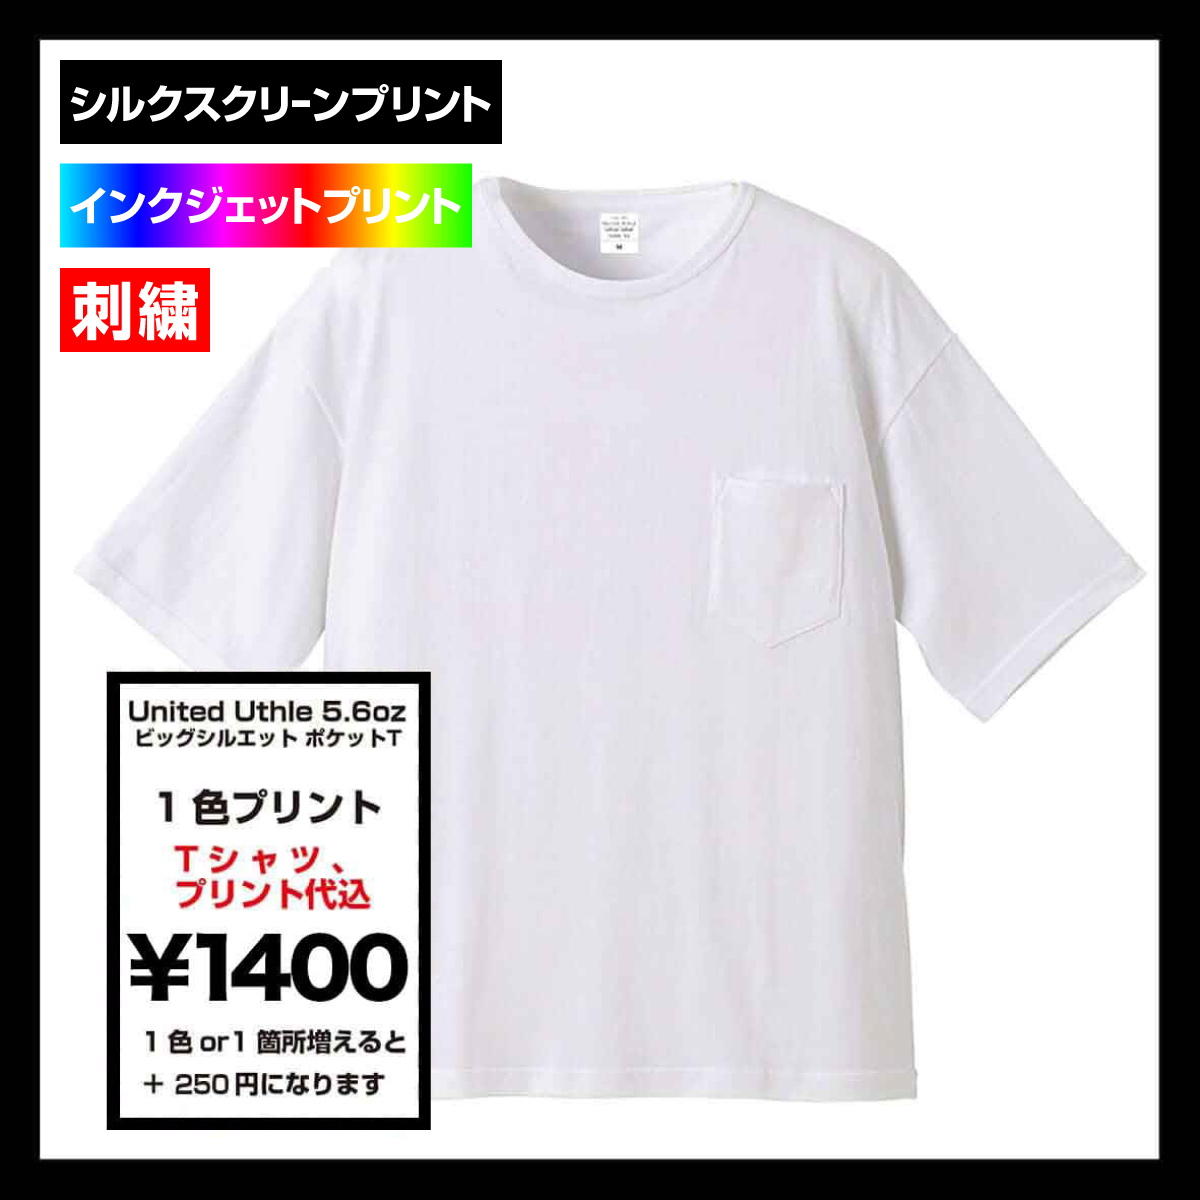 United Athle ユナイテッドアスレ 5.6 oz ビッグシルエット ポケットTシャツ (品番5008-01)